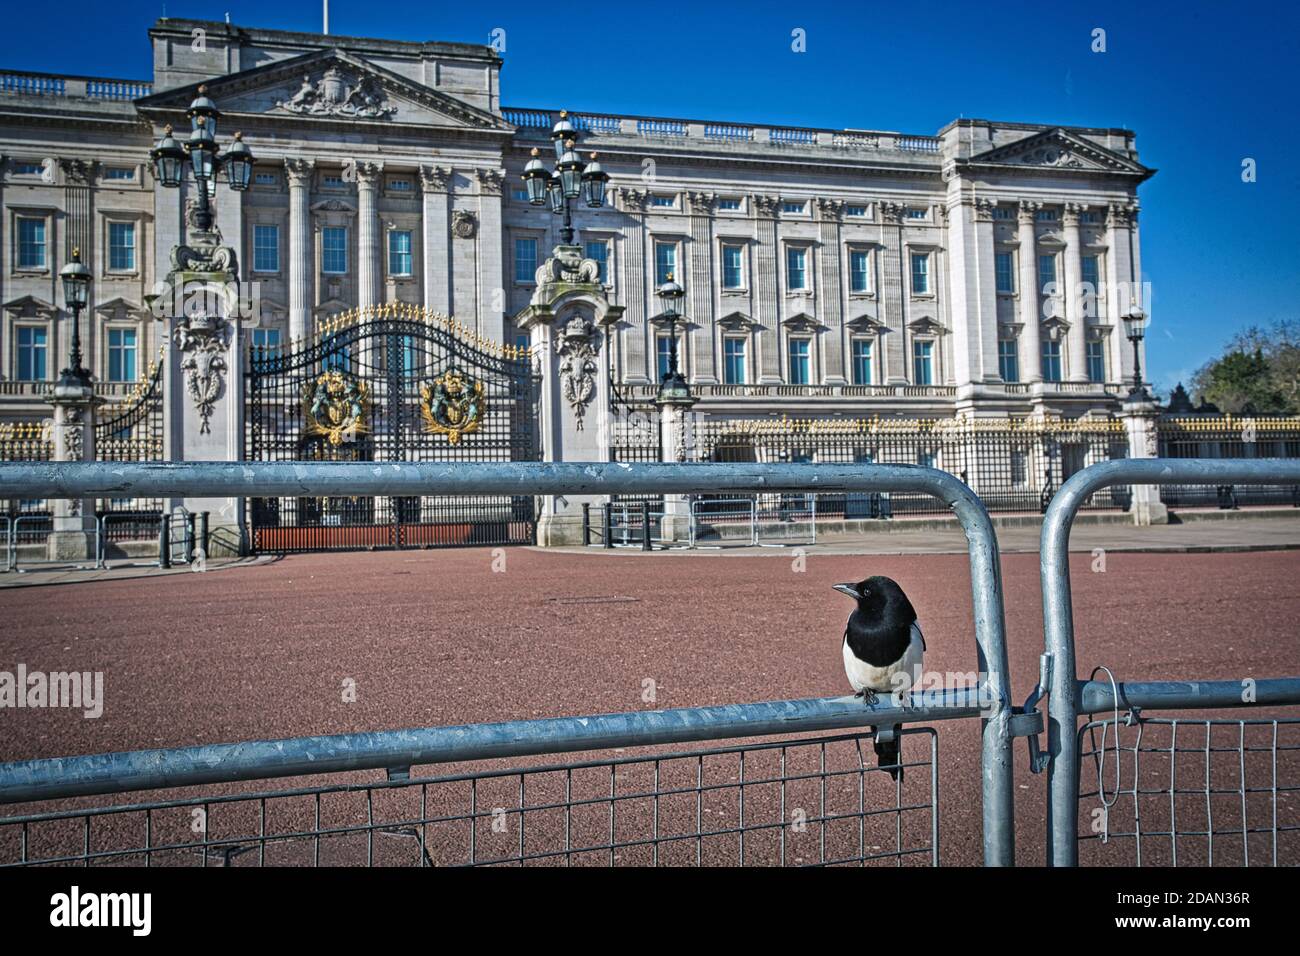 GRANDE-BRETAGNE / Angleterre / Londres / une ville irréelle à Londres 24.3.2020/ Buckingham Palace à l'air vide avec juste un emplacement magpie sur la clôture. Banque D'Images